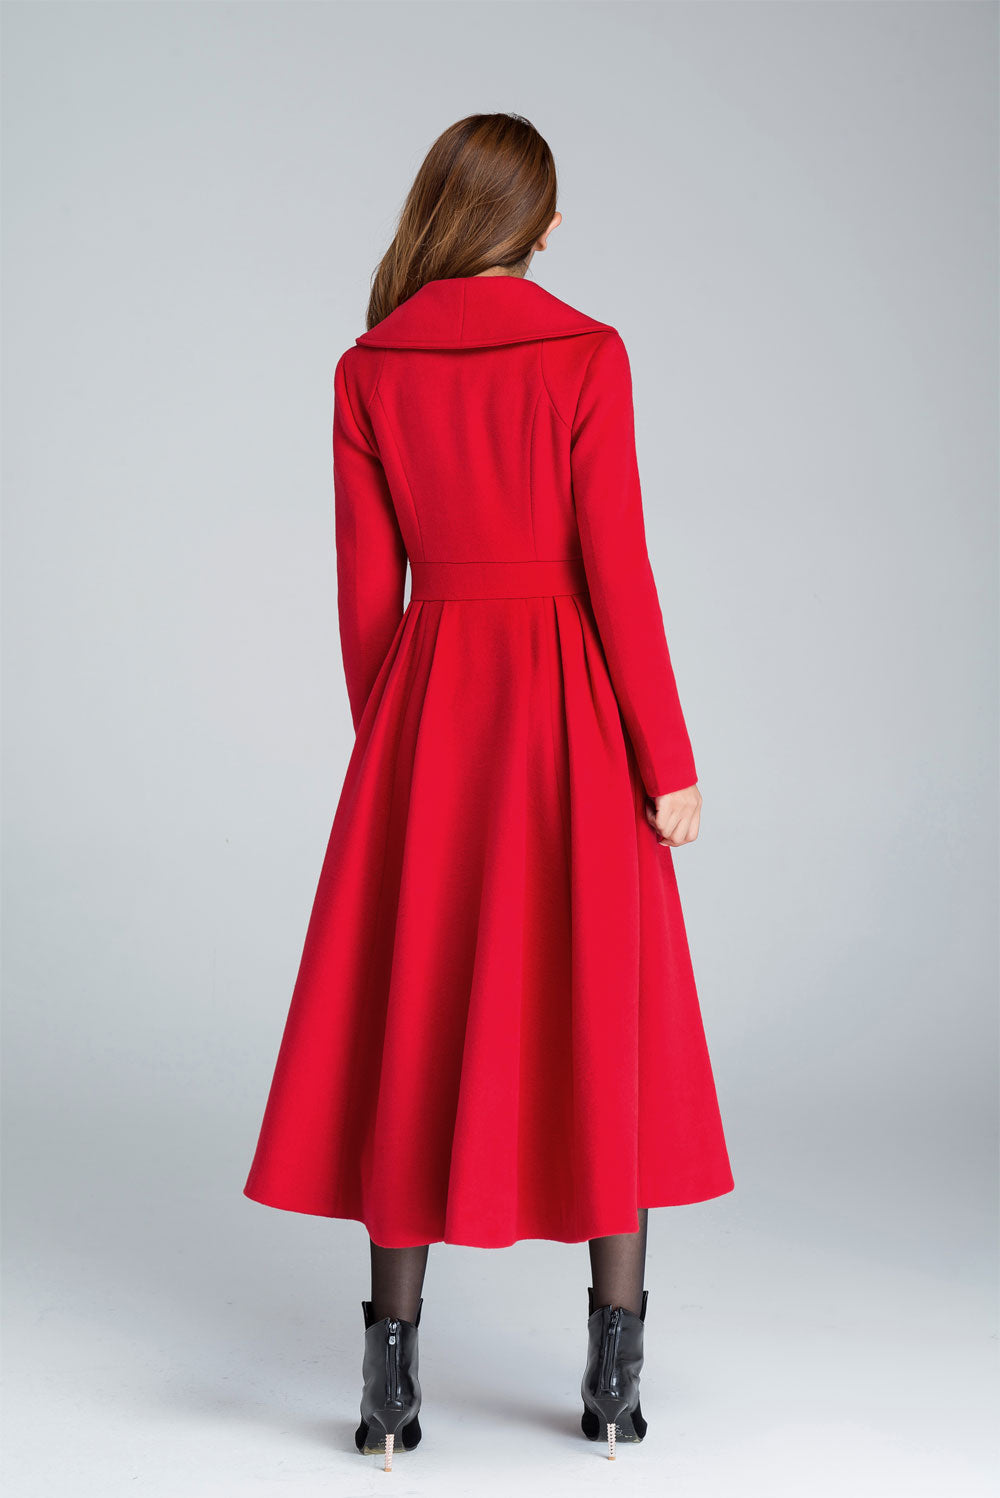 Wool Princess coat Vintage inspired Swing coat 1640#